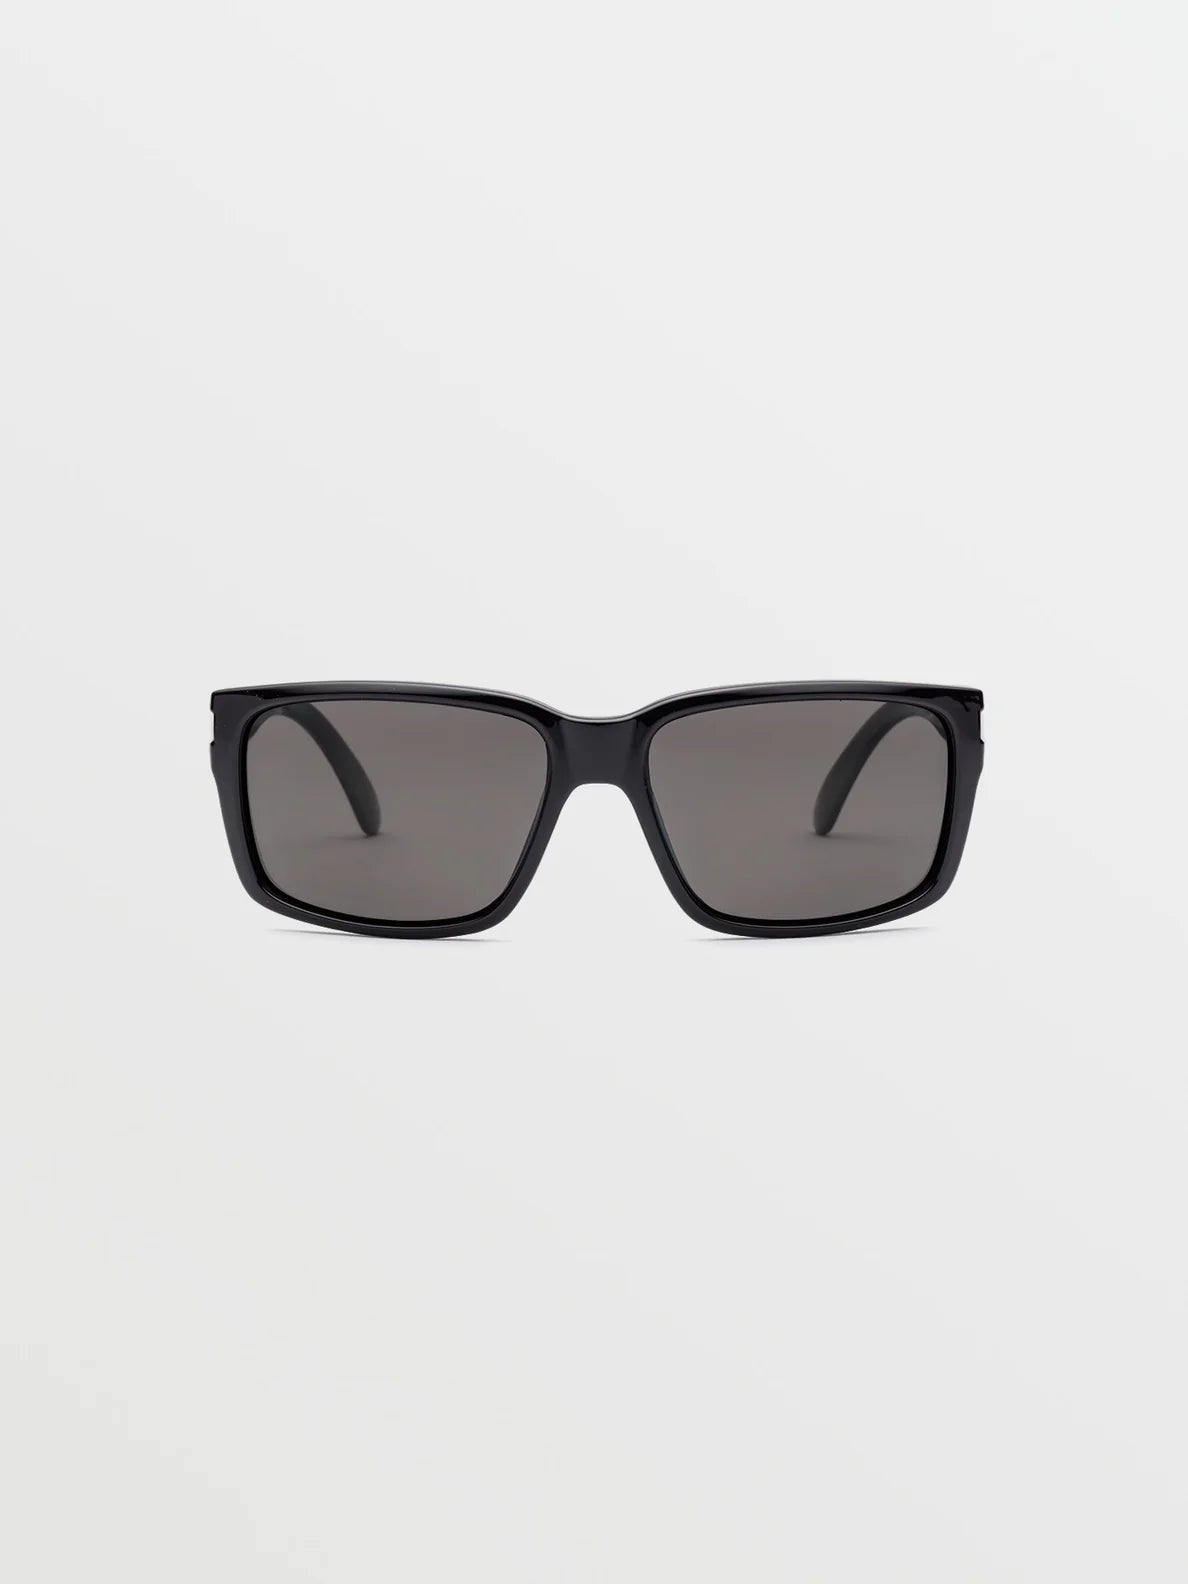 Gafas Volcom Gloss Black / Gray Polar